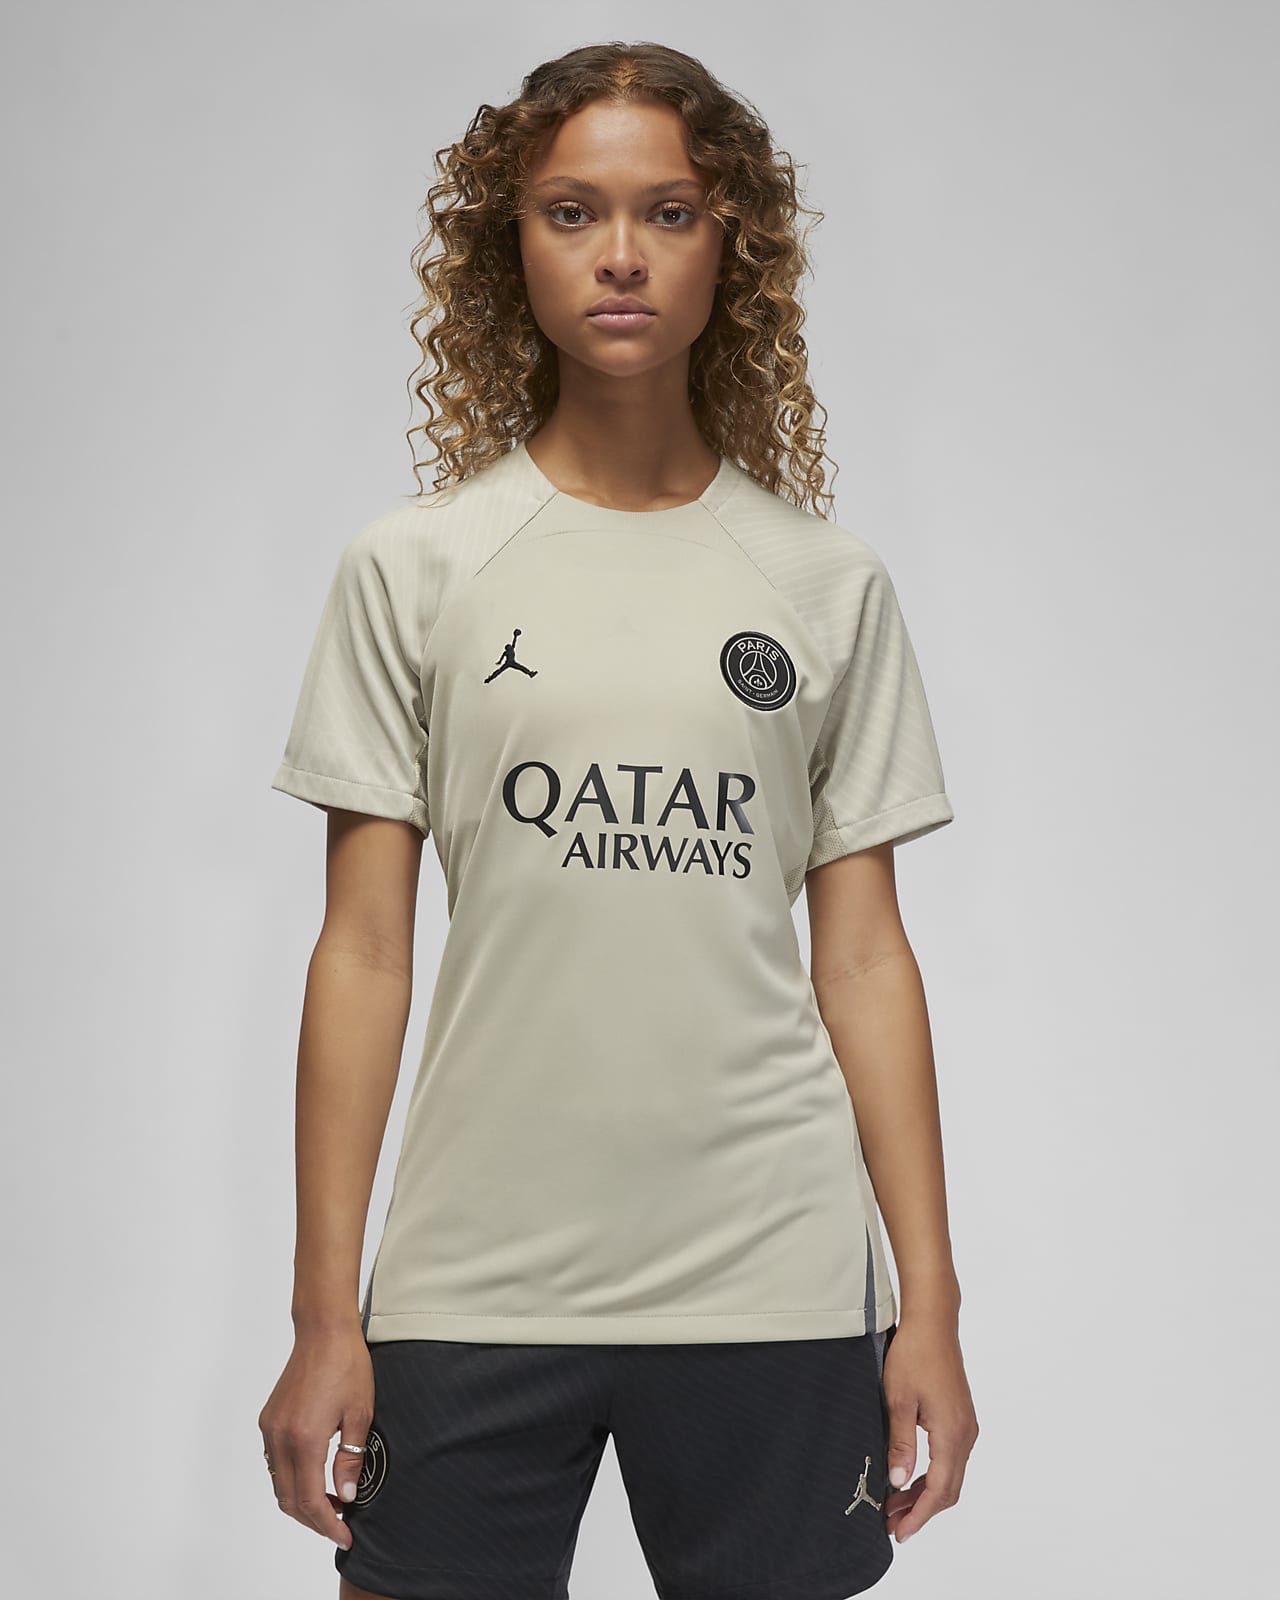 Γυναικεία ποδοσφαιρική κοντομάνικη πλεκτή μπλούζα Jordan Dri-FIT εναλλακτικής εμφάνισης Παρί Σεν Ζερμέν Strike